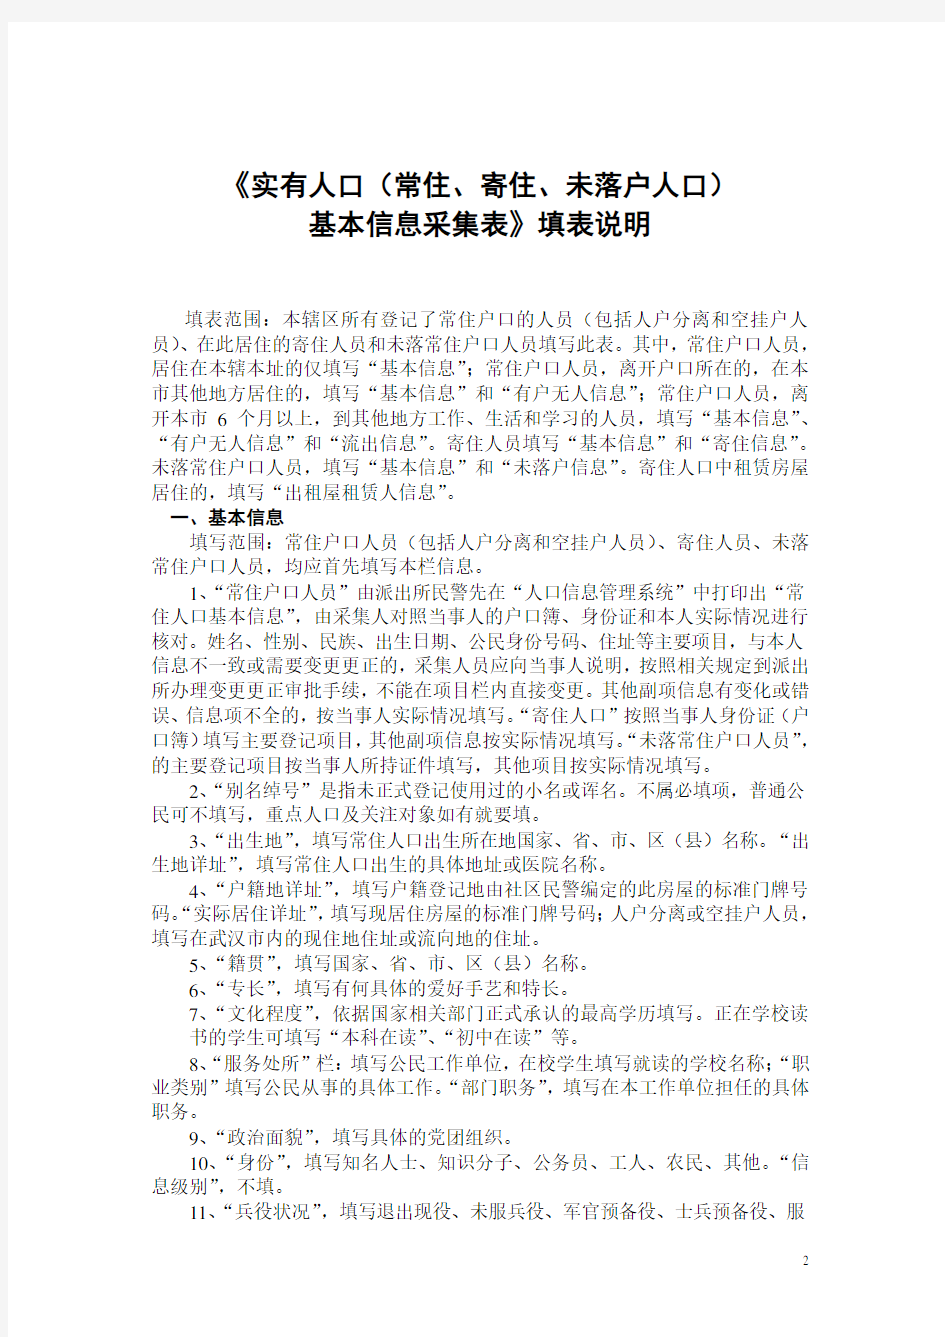 武汉市实有房屋信息采集表填表说明